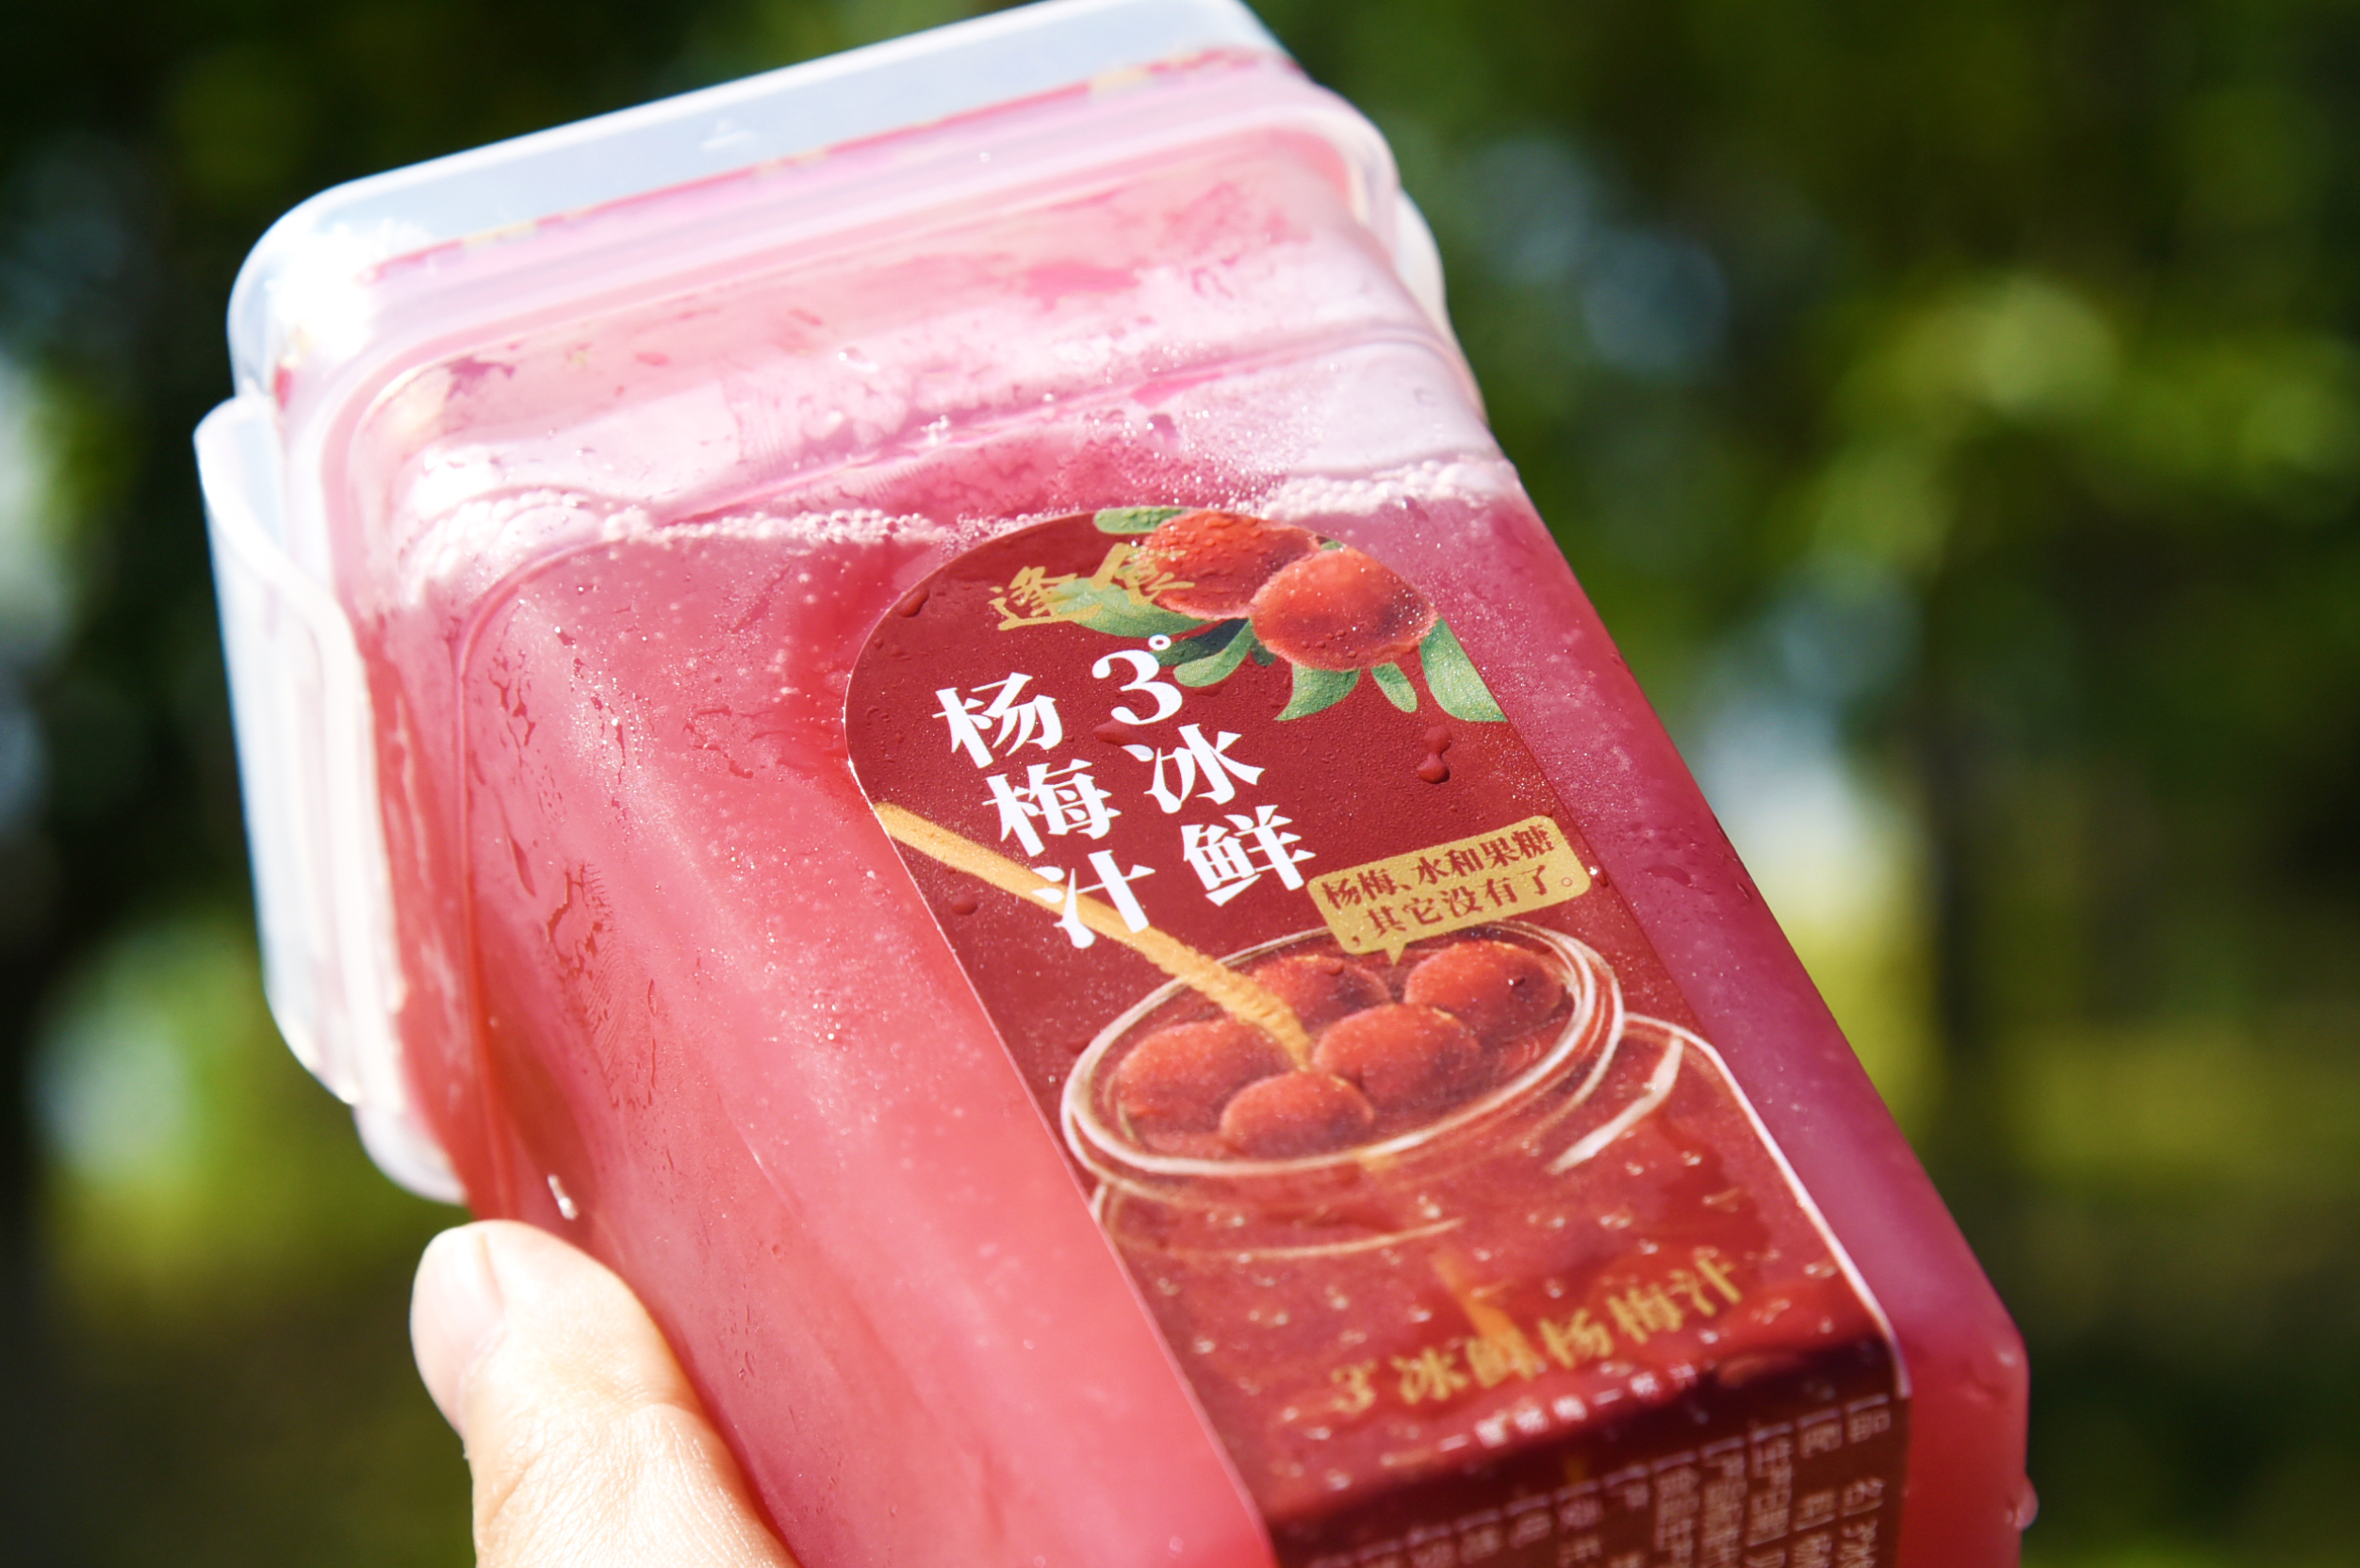 夏日消暑开胃指南——《冰鲜杨梅汁的最强吃法》